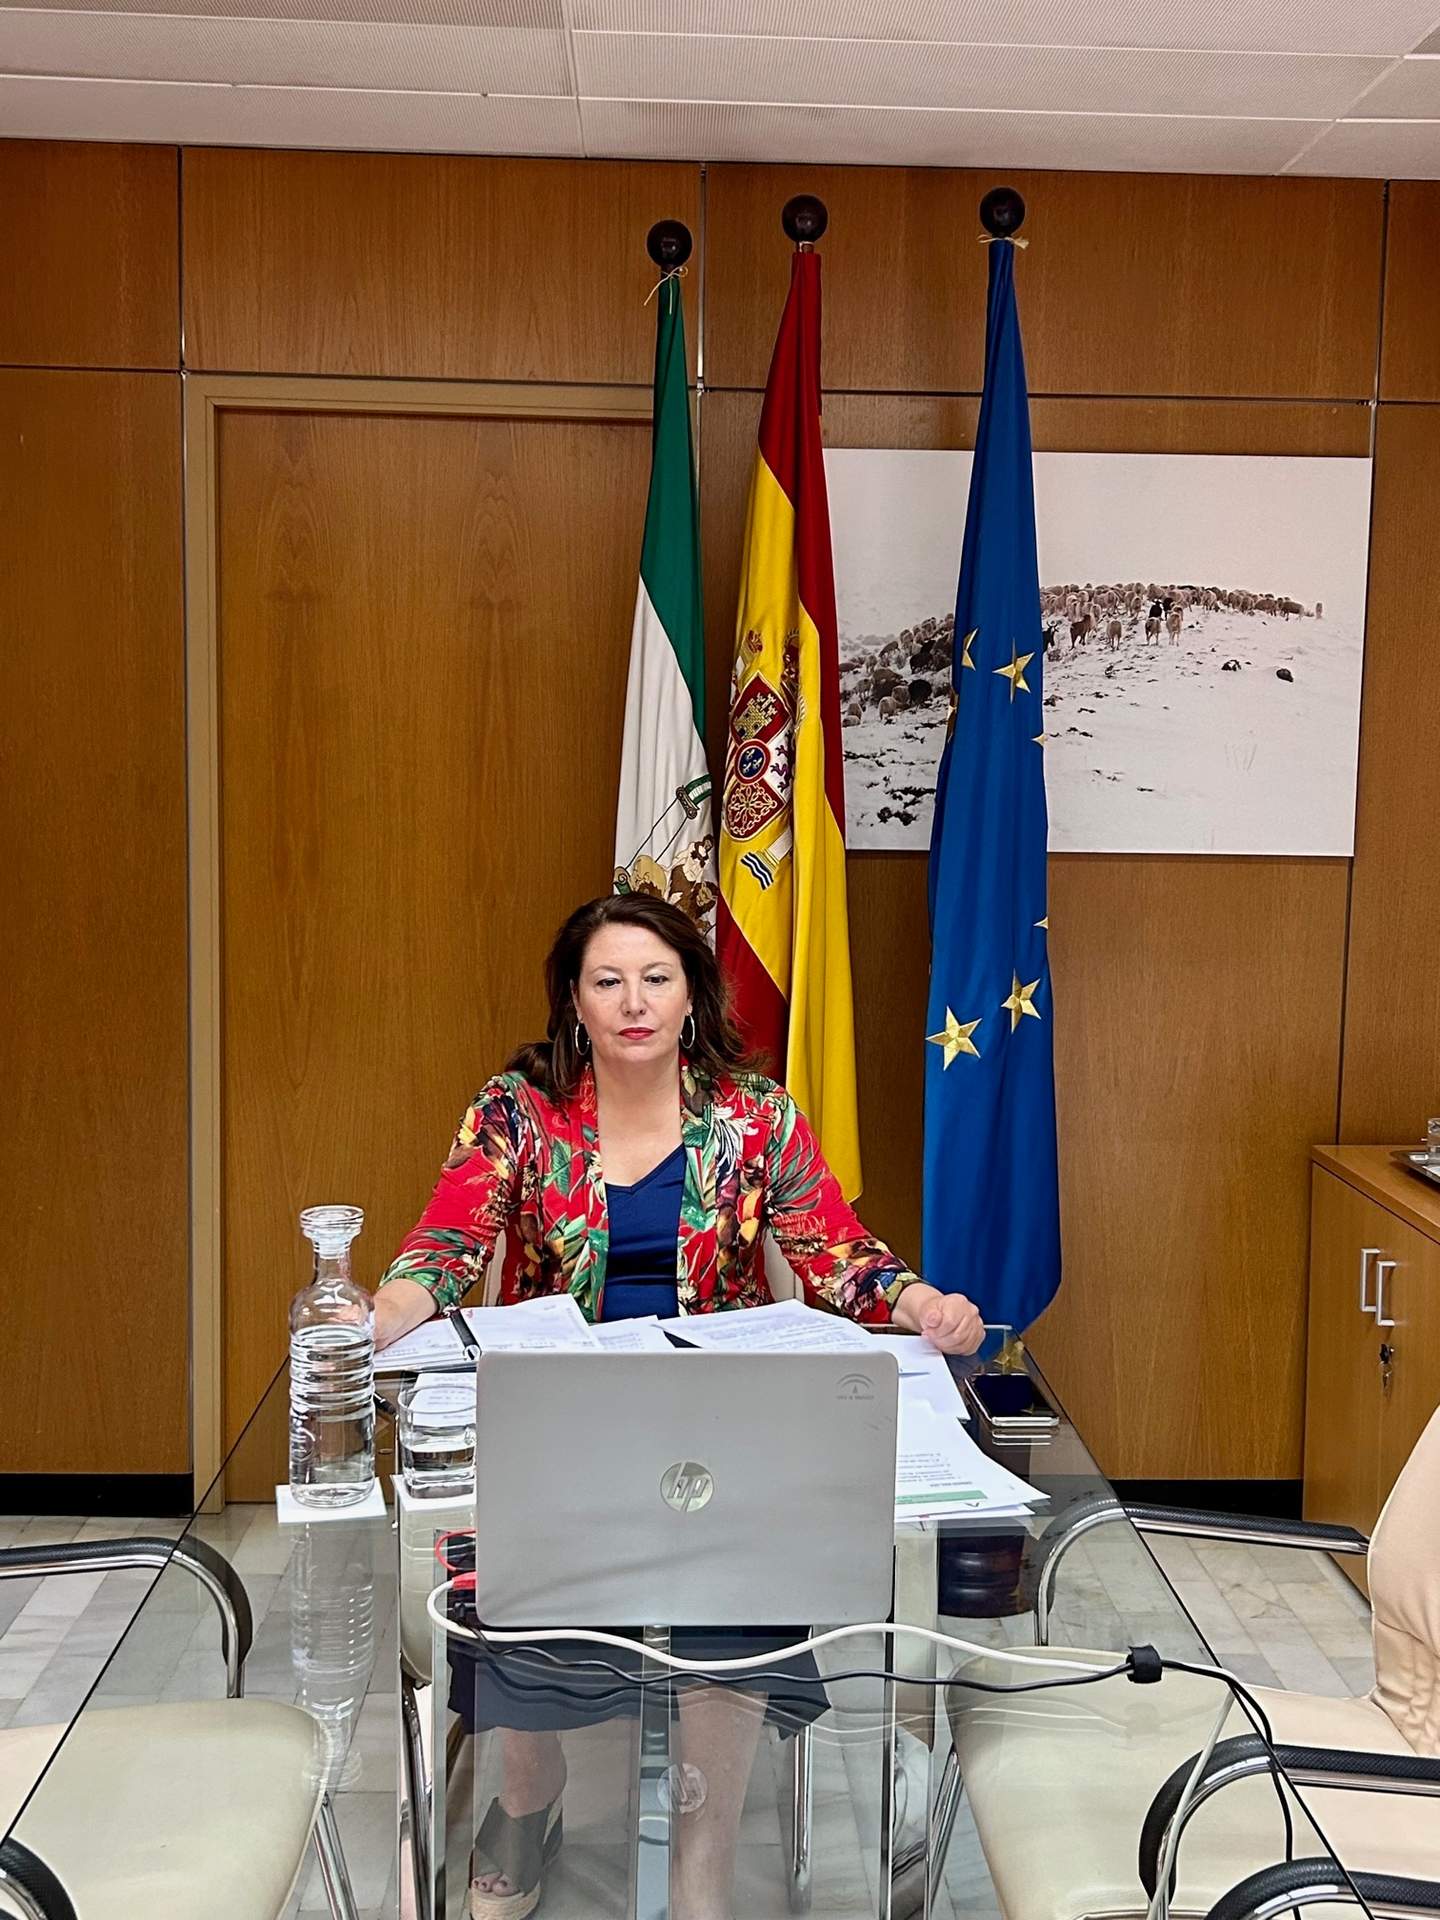 Andalucía reitera su demanda al Estado de flexibilizar la PAC y de medidas frente a la sequía